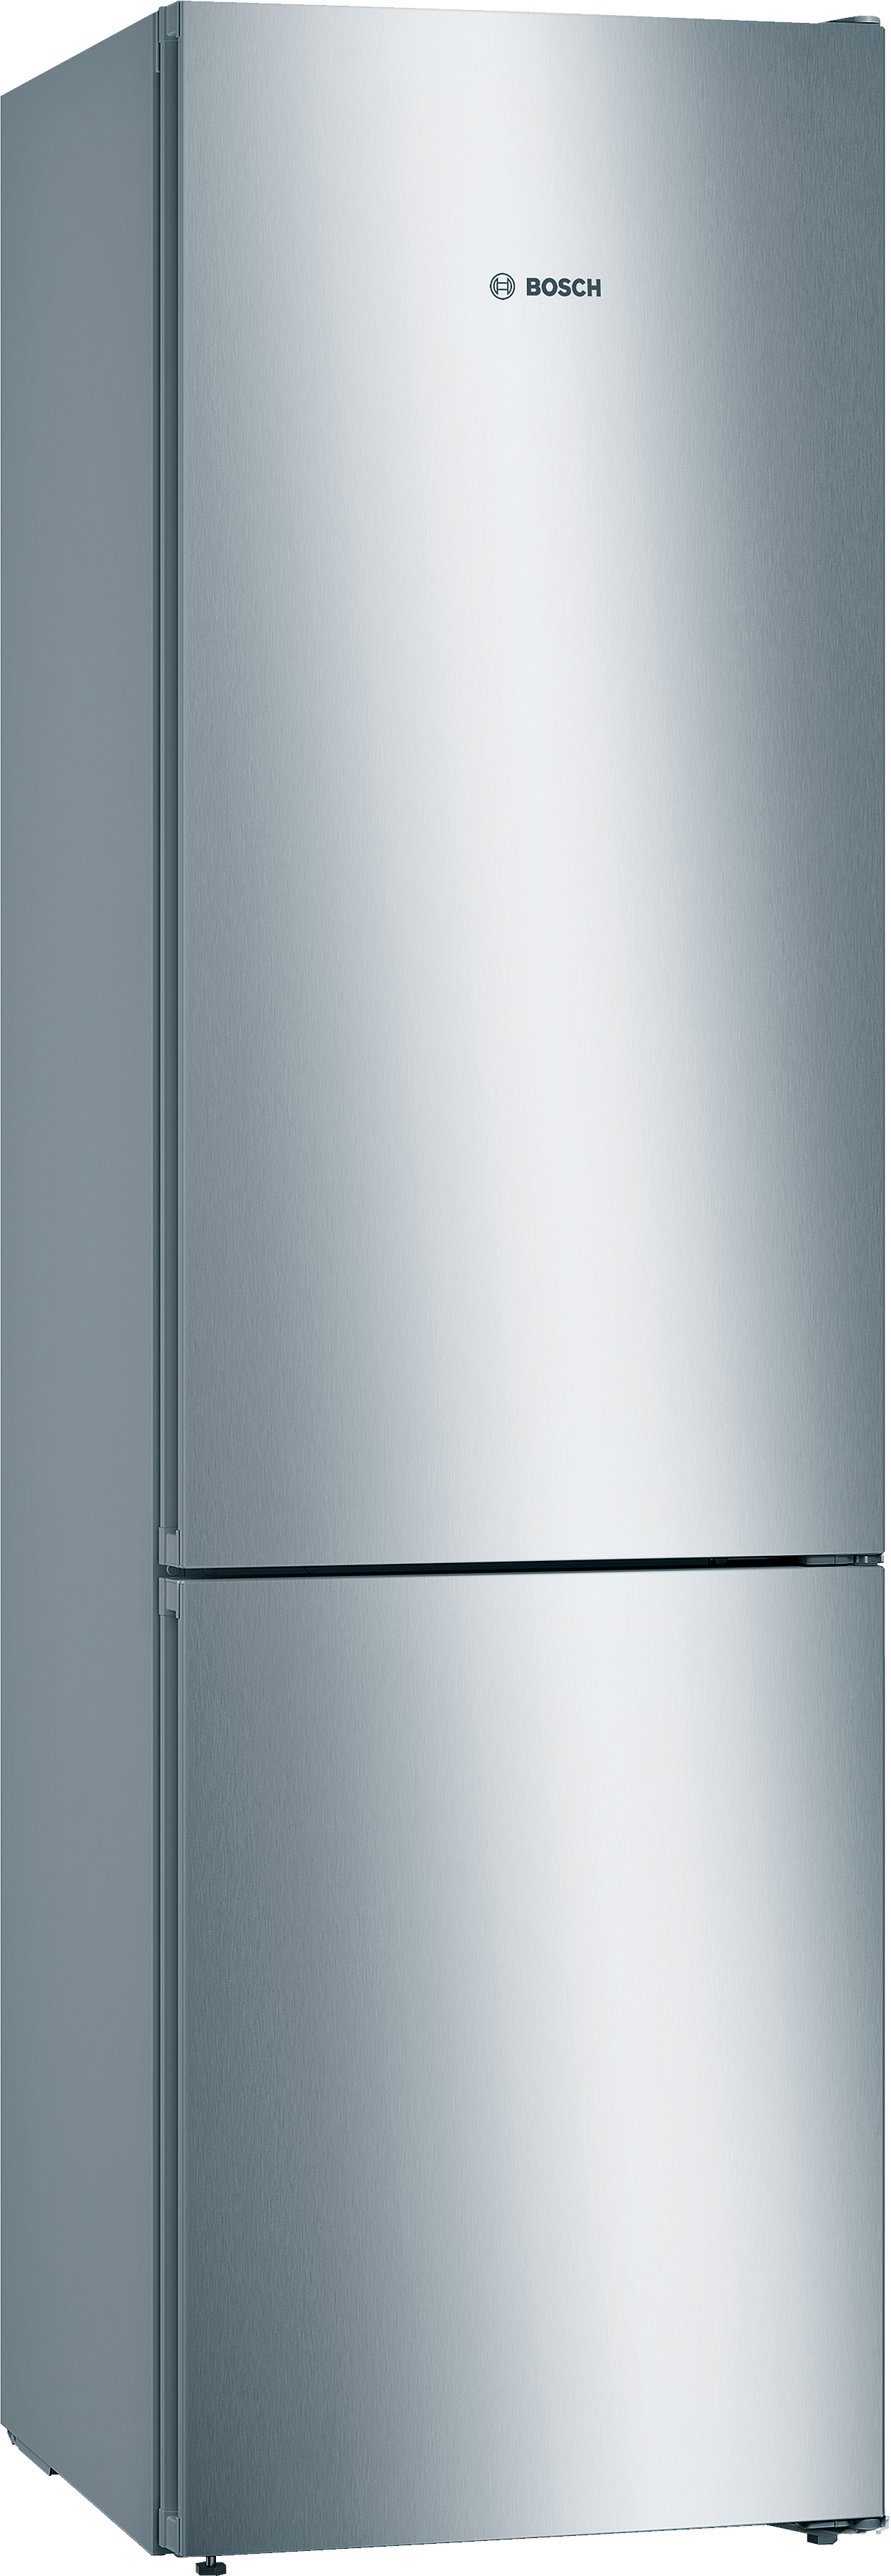 Отзывы холодильник Bosch KGN39VL316 в Украине